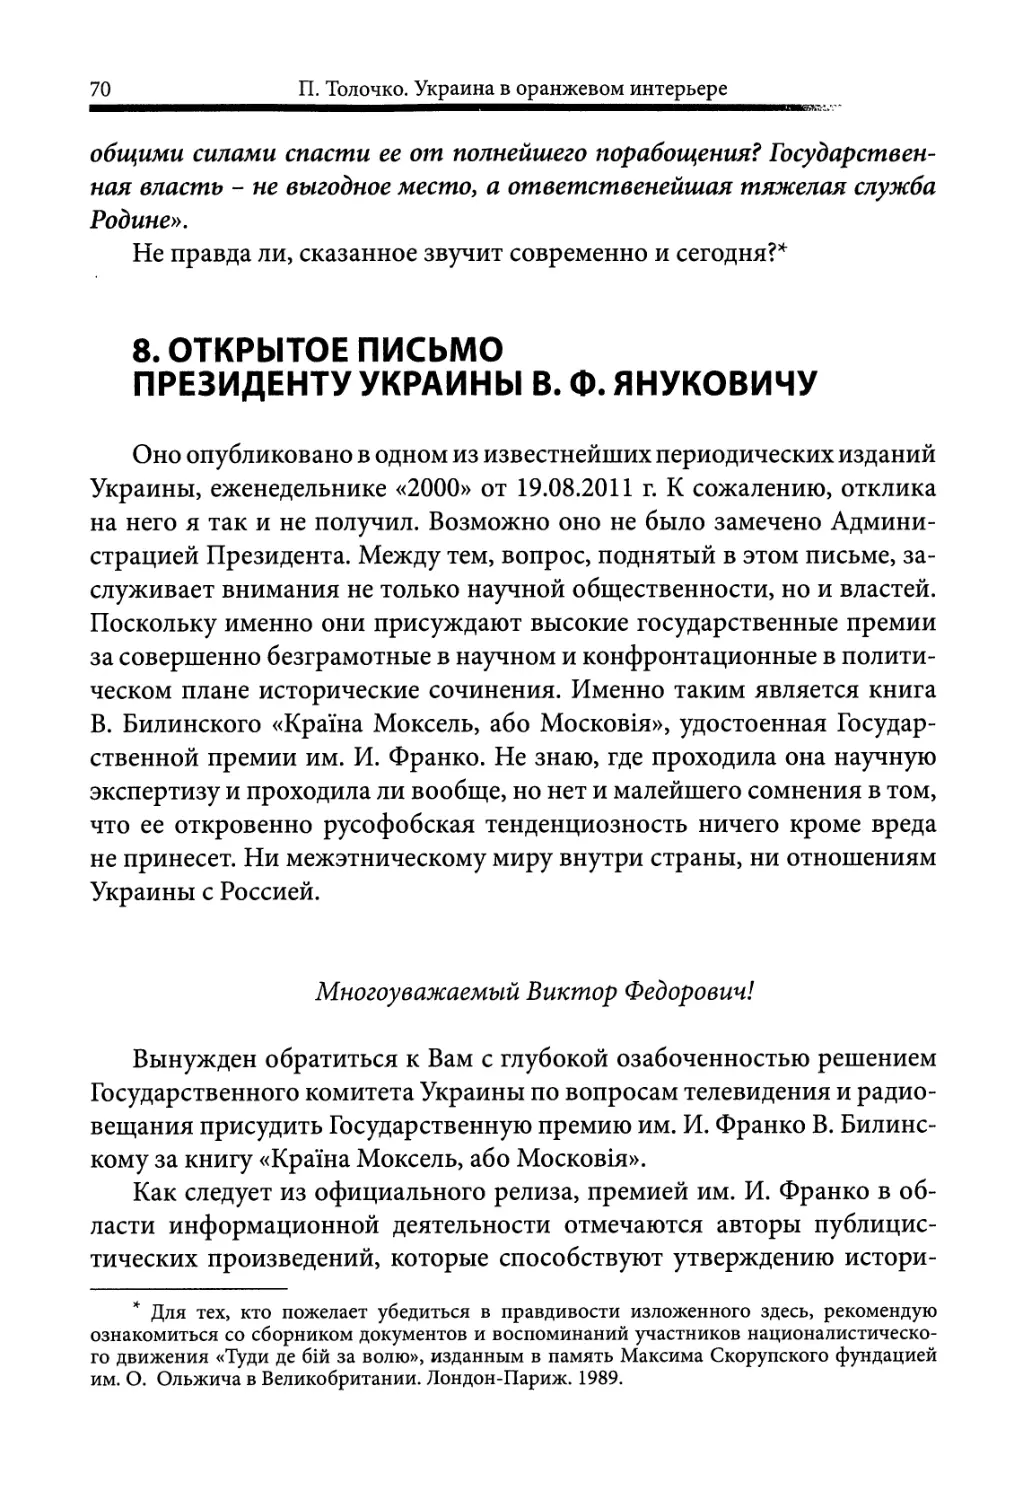 8. Открытое письмо Президенту Украины В.Ф. Януковичу